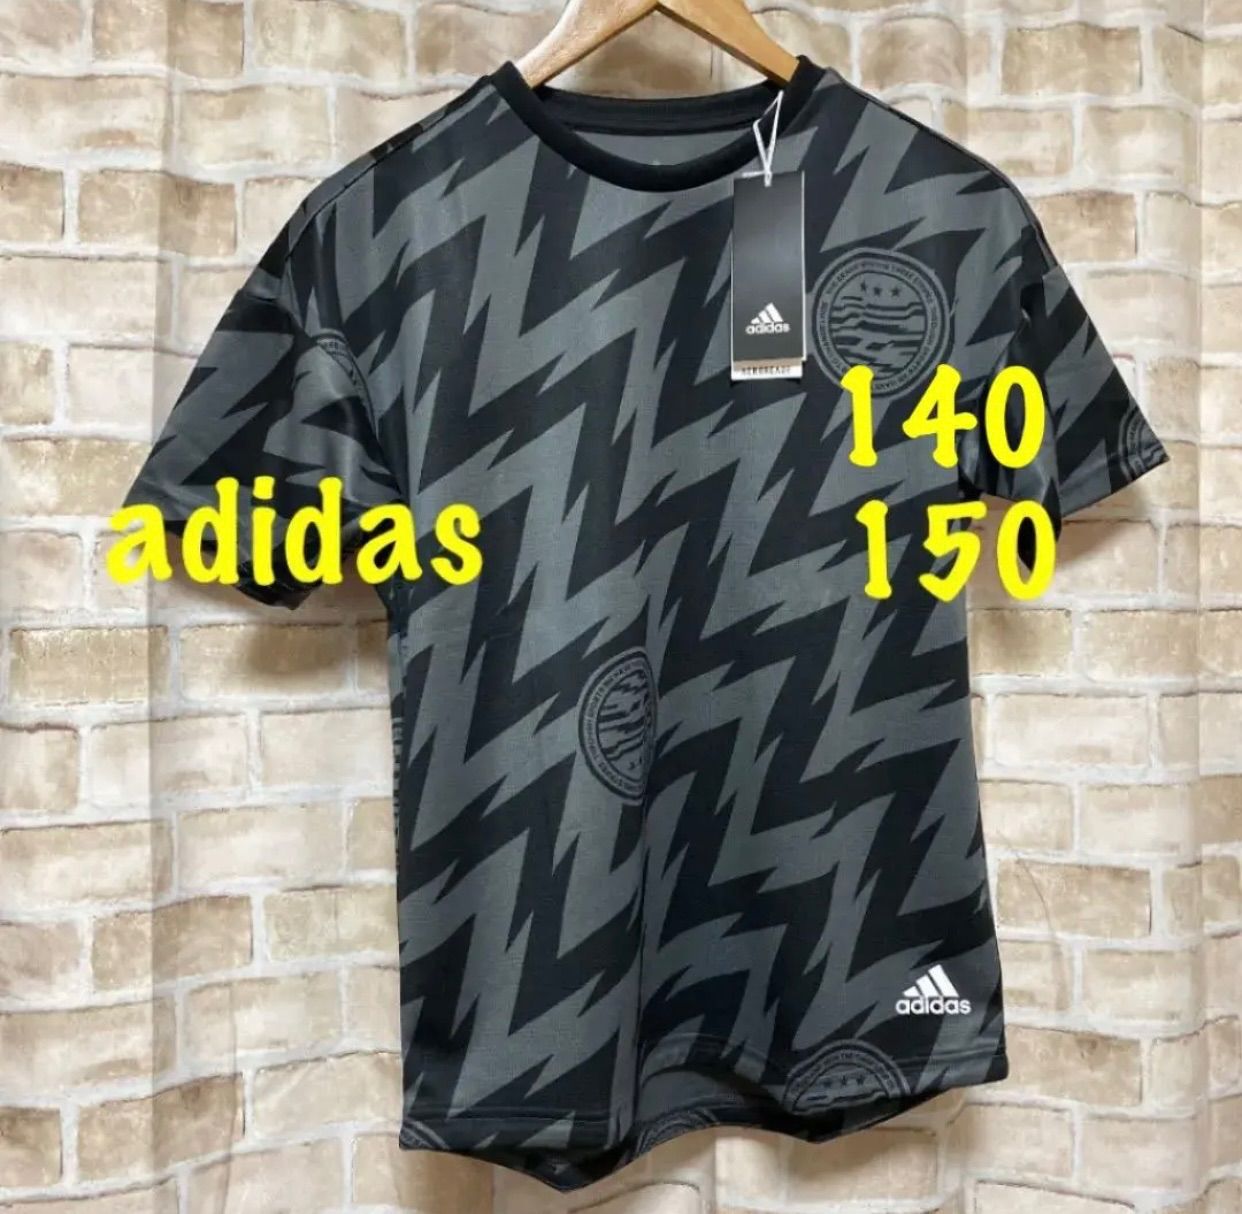 アディダス Tシャツ 140 - 通販 - guianegro.com.br